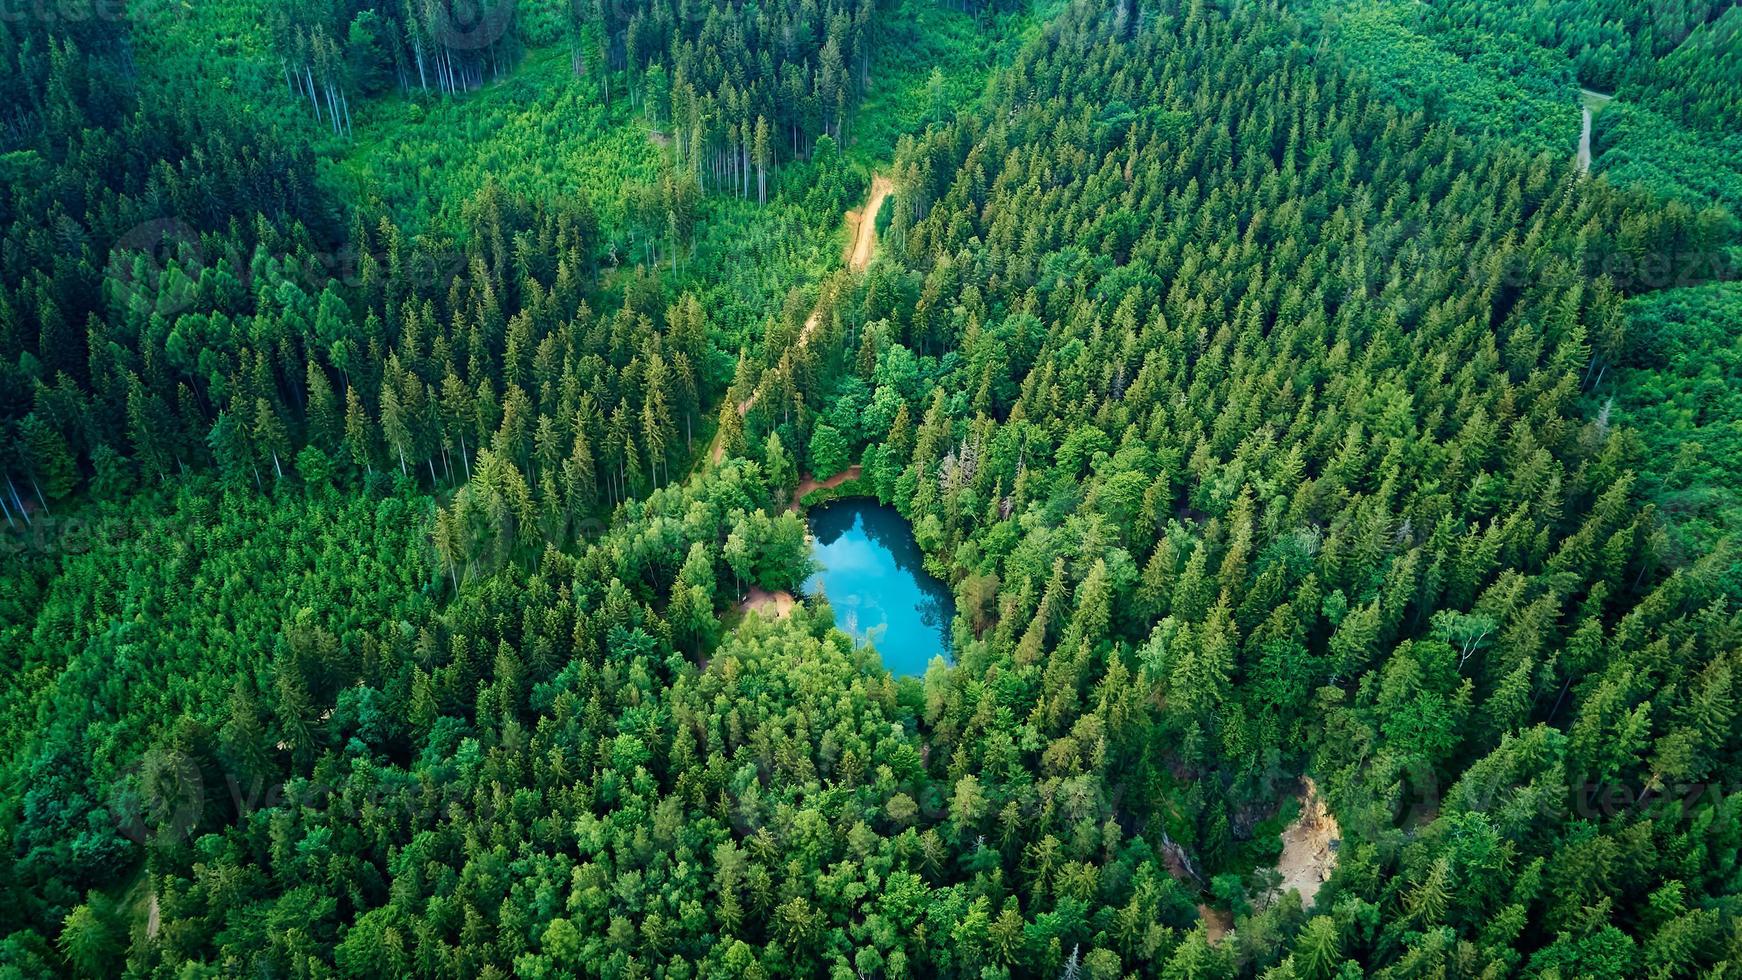 Antenne Aussicht von Blau farbig Wald See im Polen foto